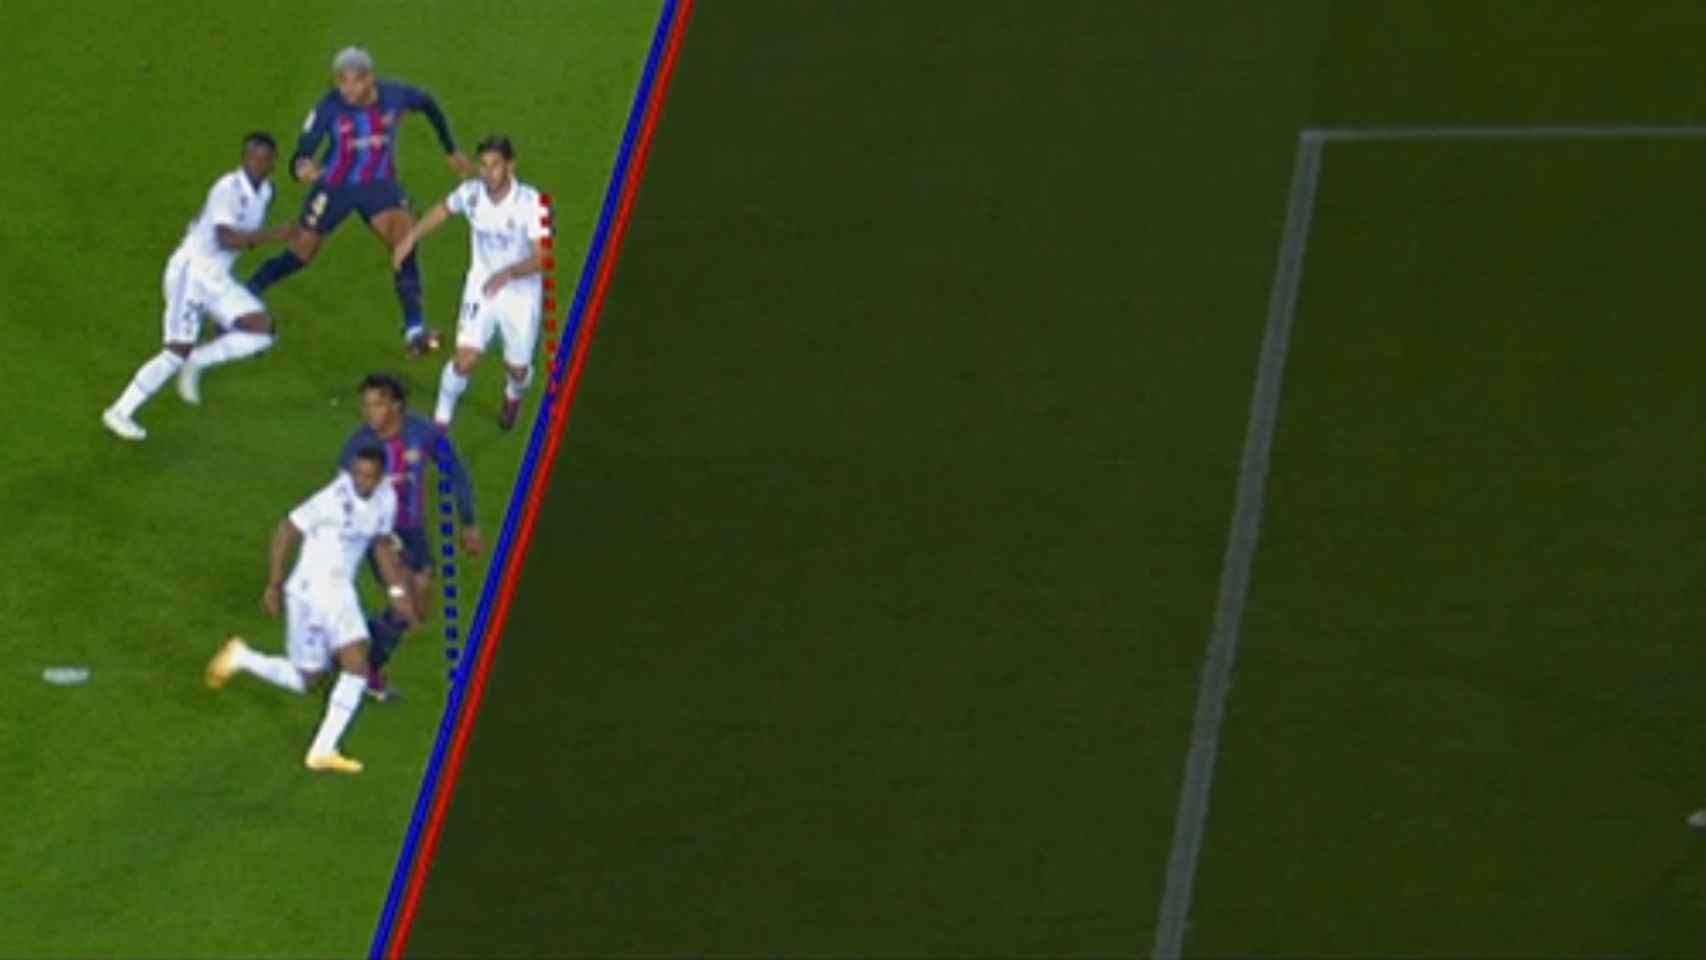 Gol anulado a Asensio por fuera de juego